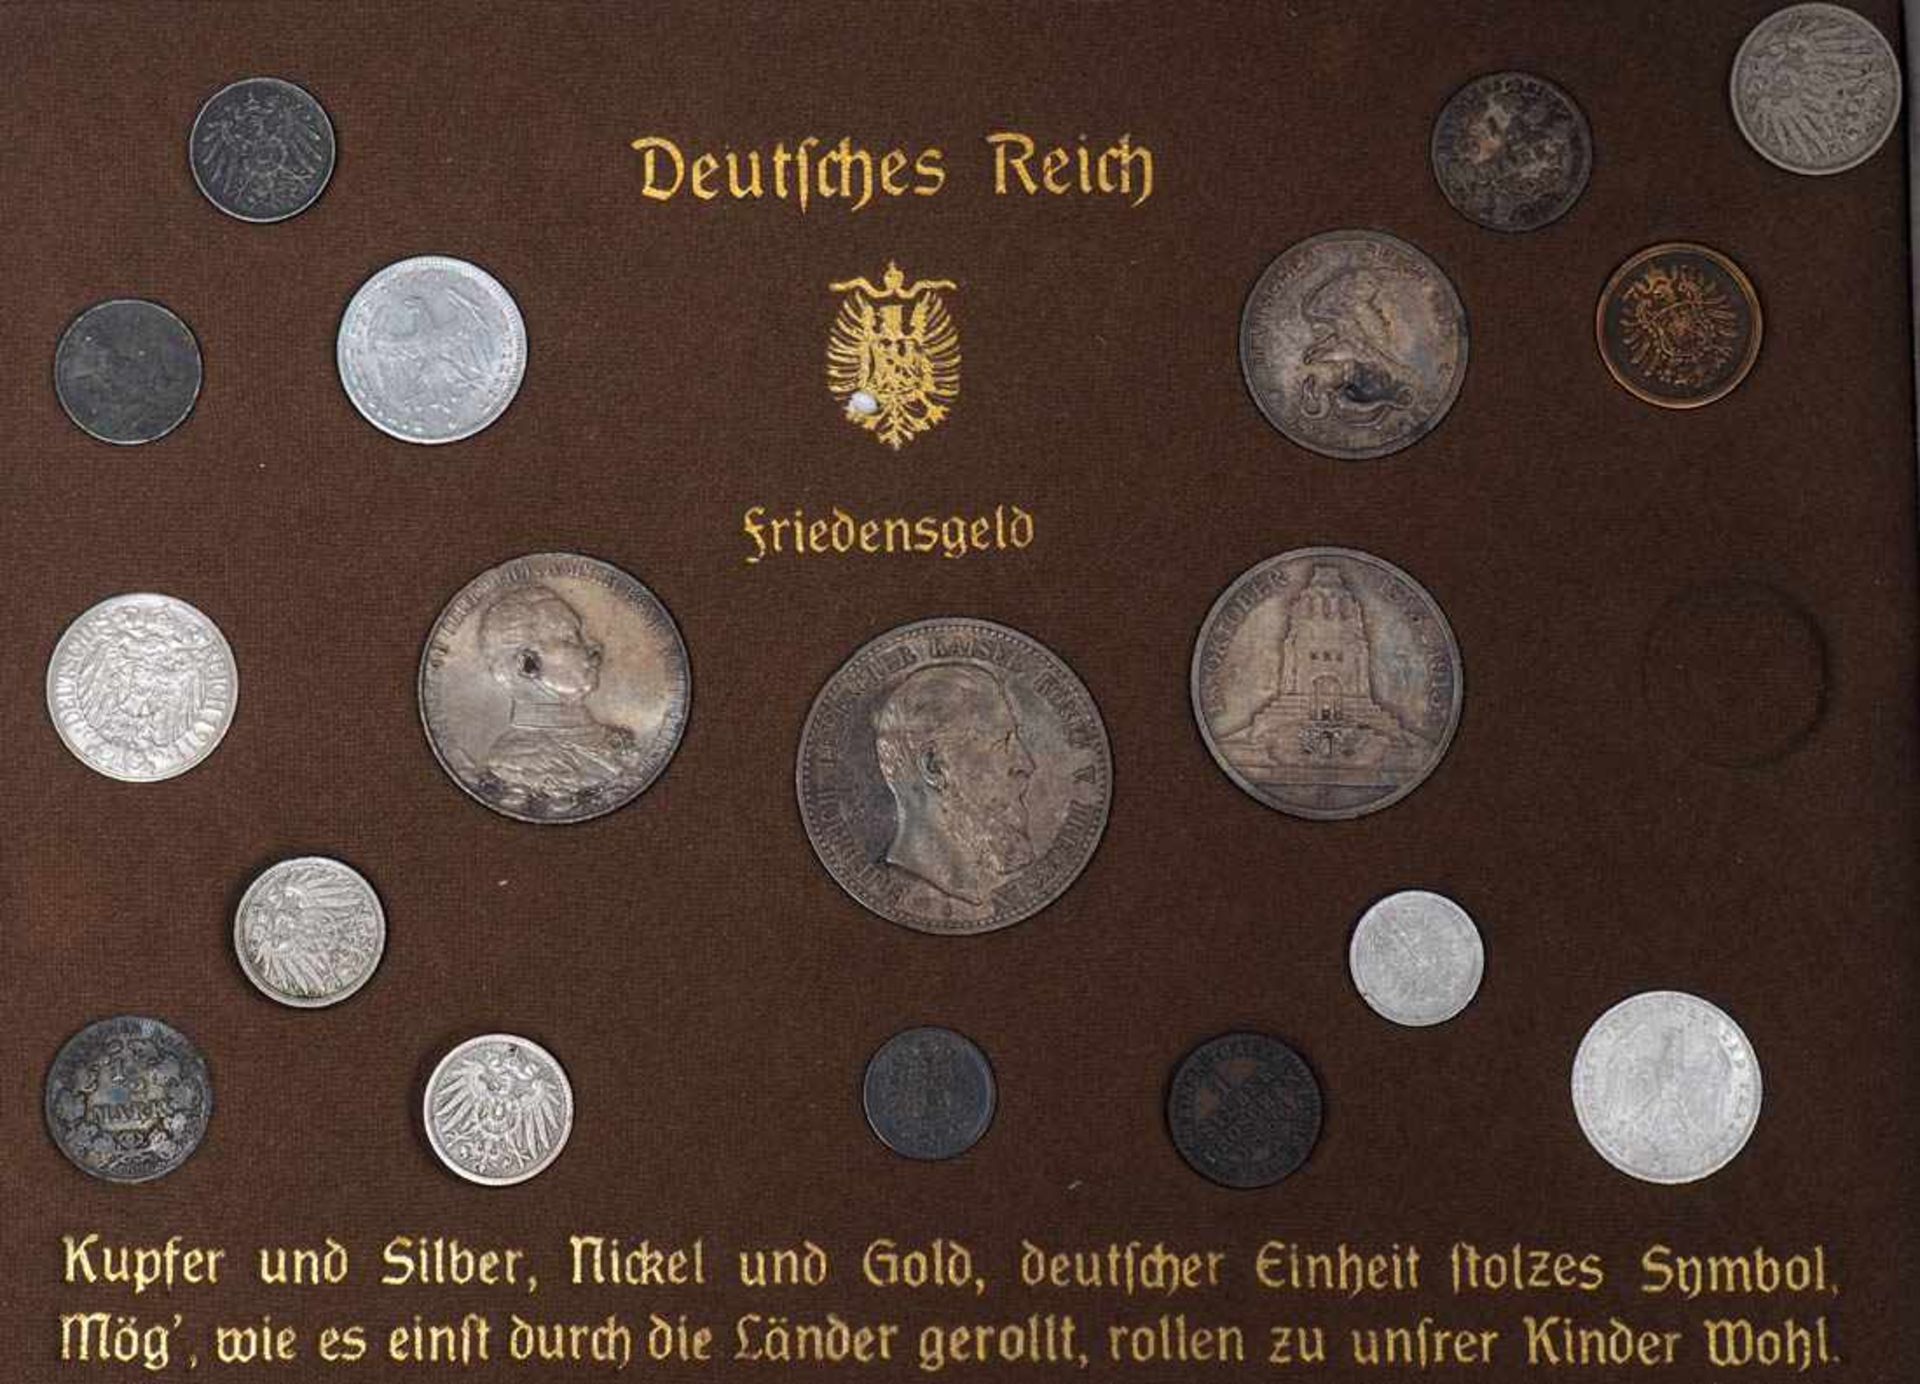 Kassette, Deutsches Reich Friedensgeld 18 Münzen in originaler Kassette. - Bild 2 aus 2